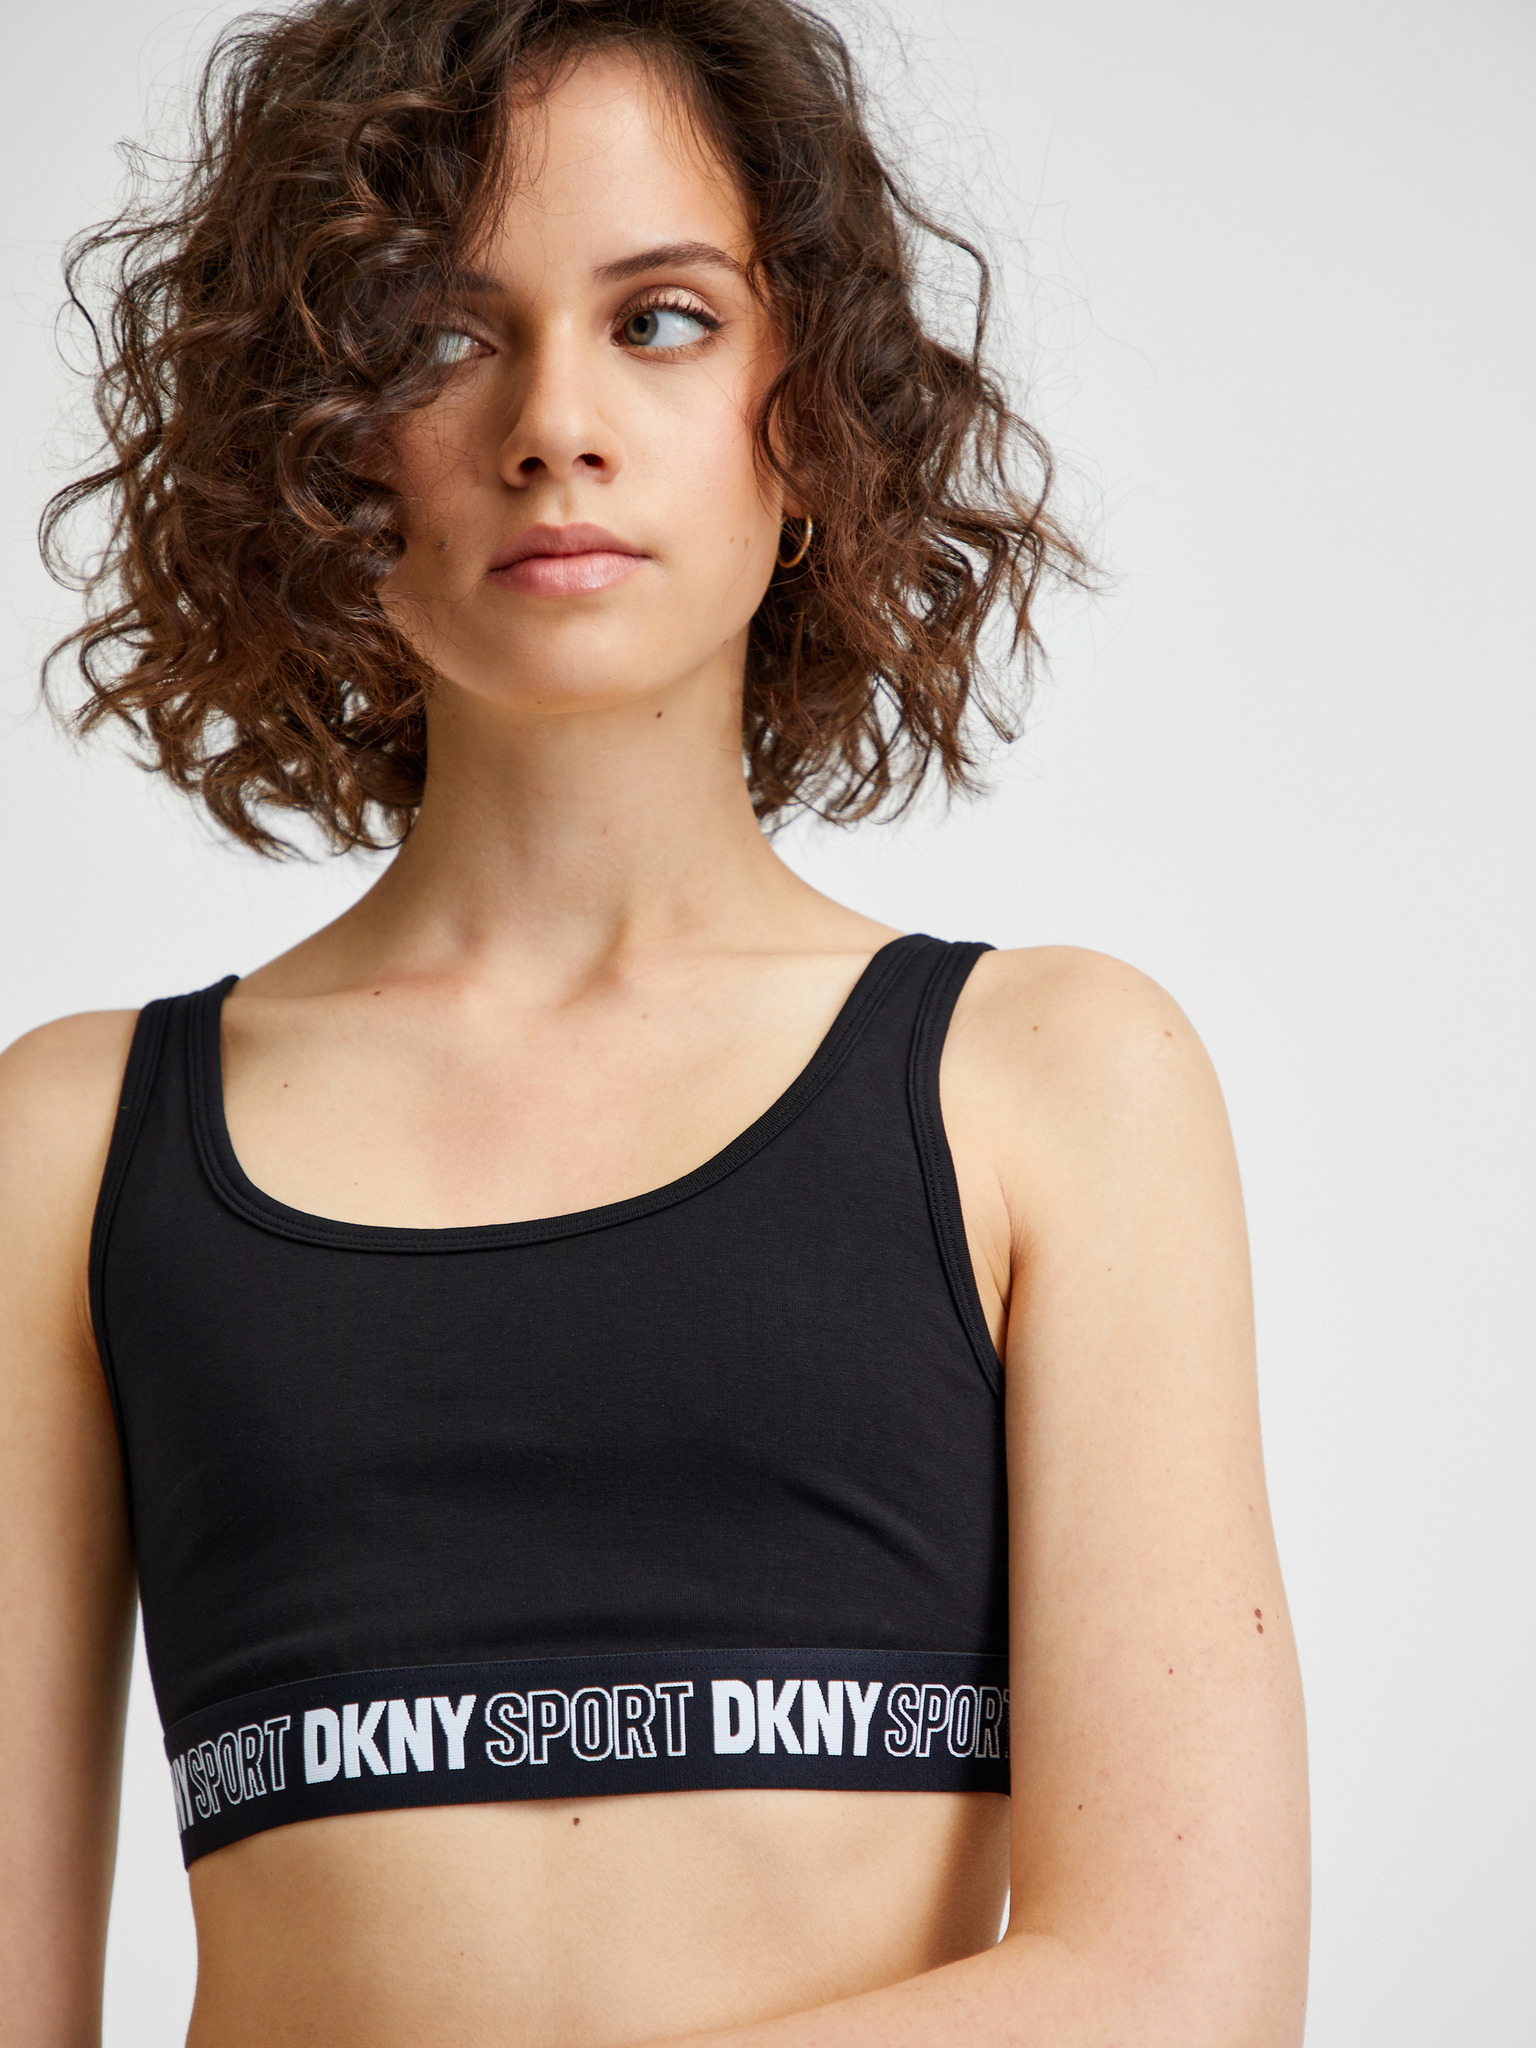 DKNY Sport Women's Twilight Sparkle Sports Bra - Black Silver - Size XS